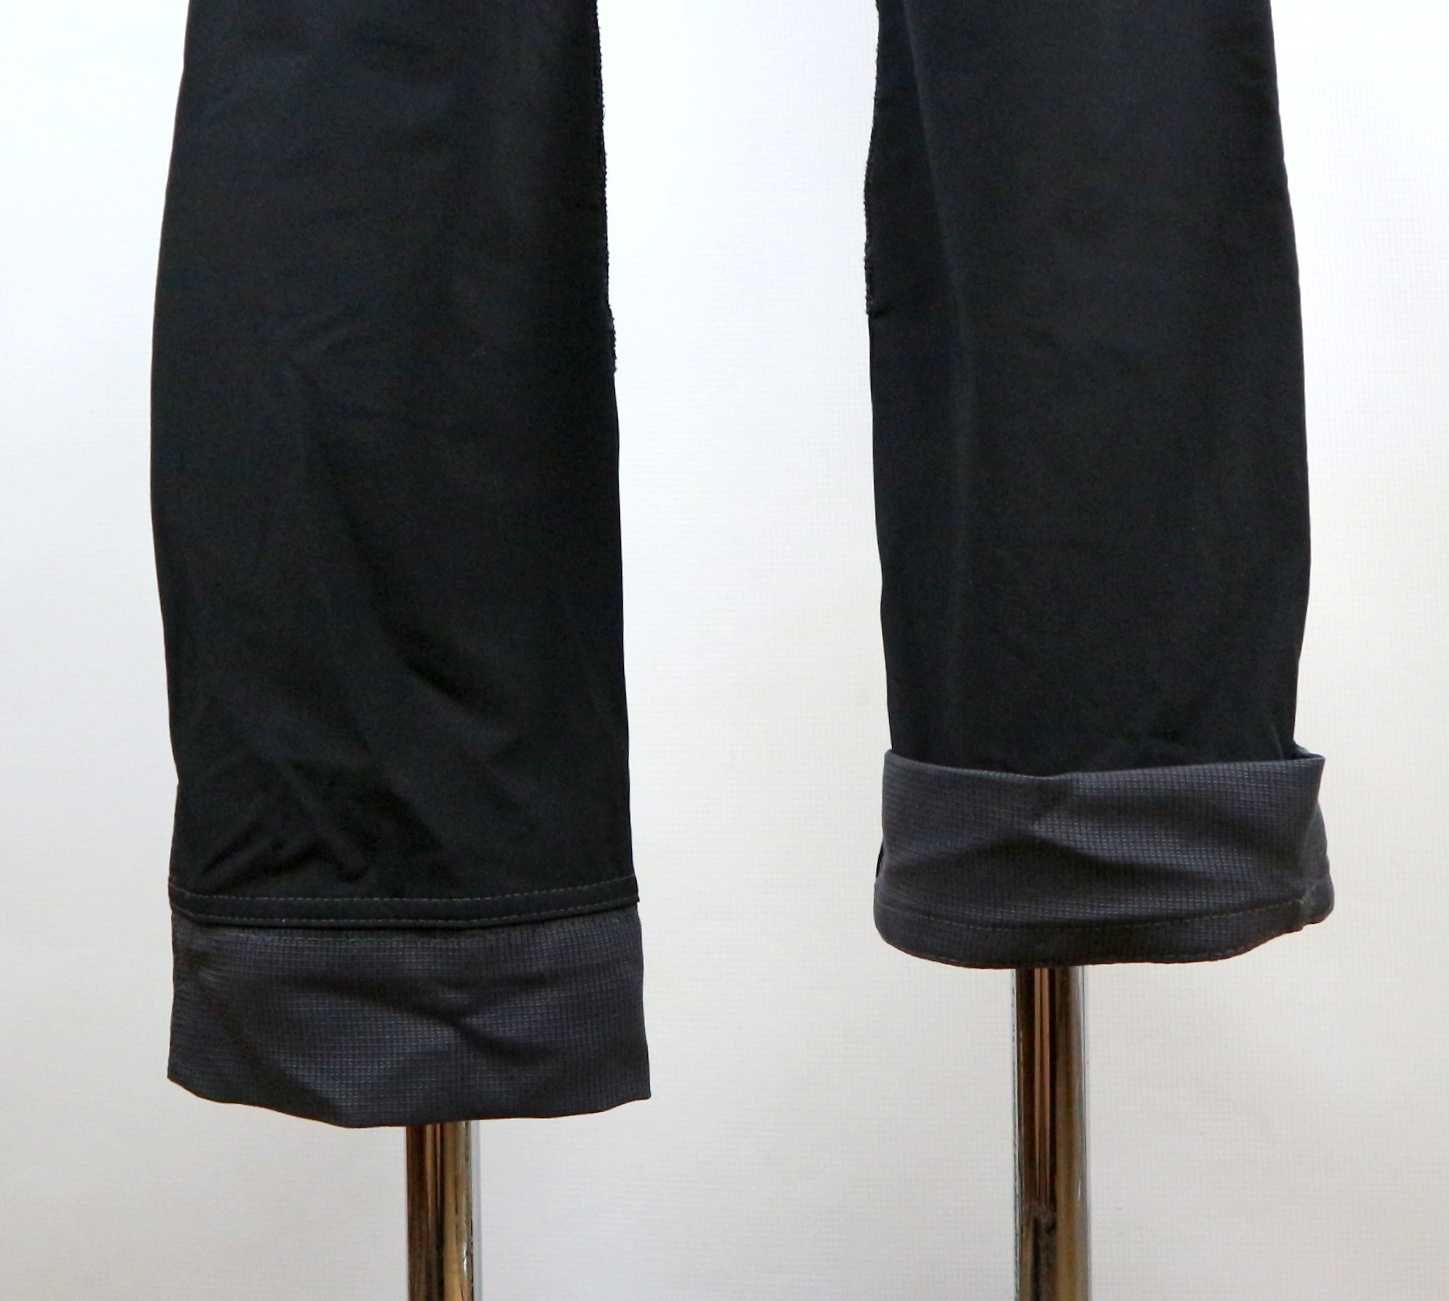 FE Engel X-treme Stretch spodnie robocze uniseks męskie XS damskie S